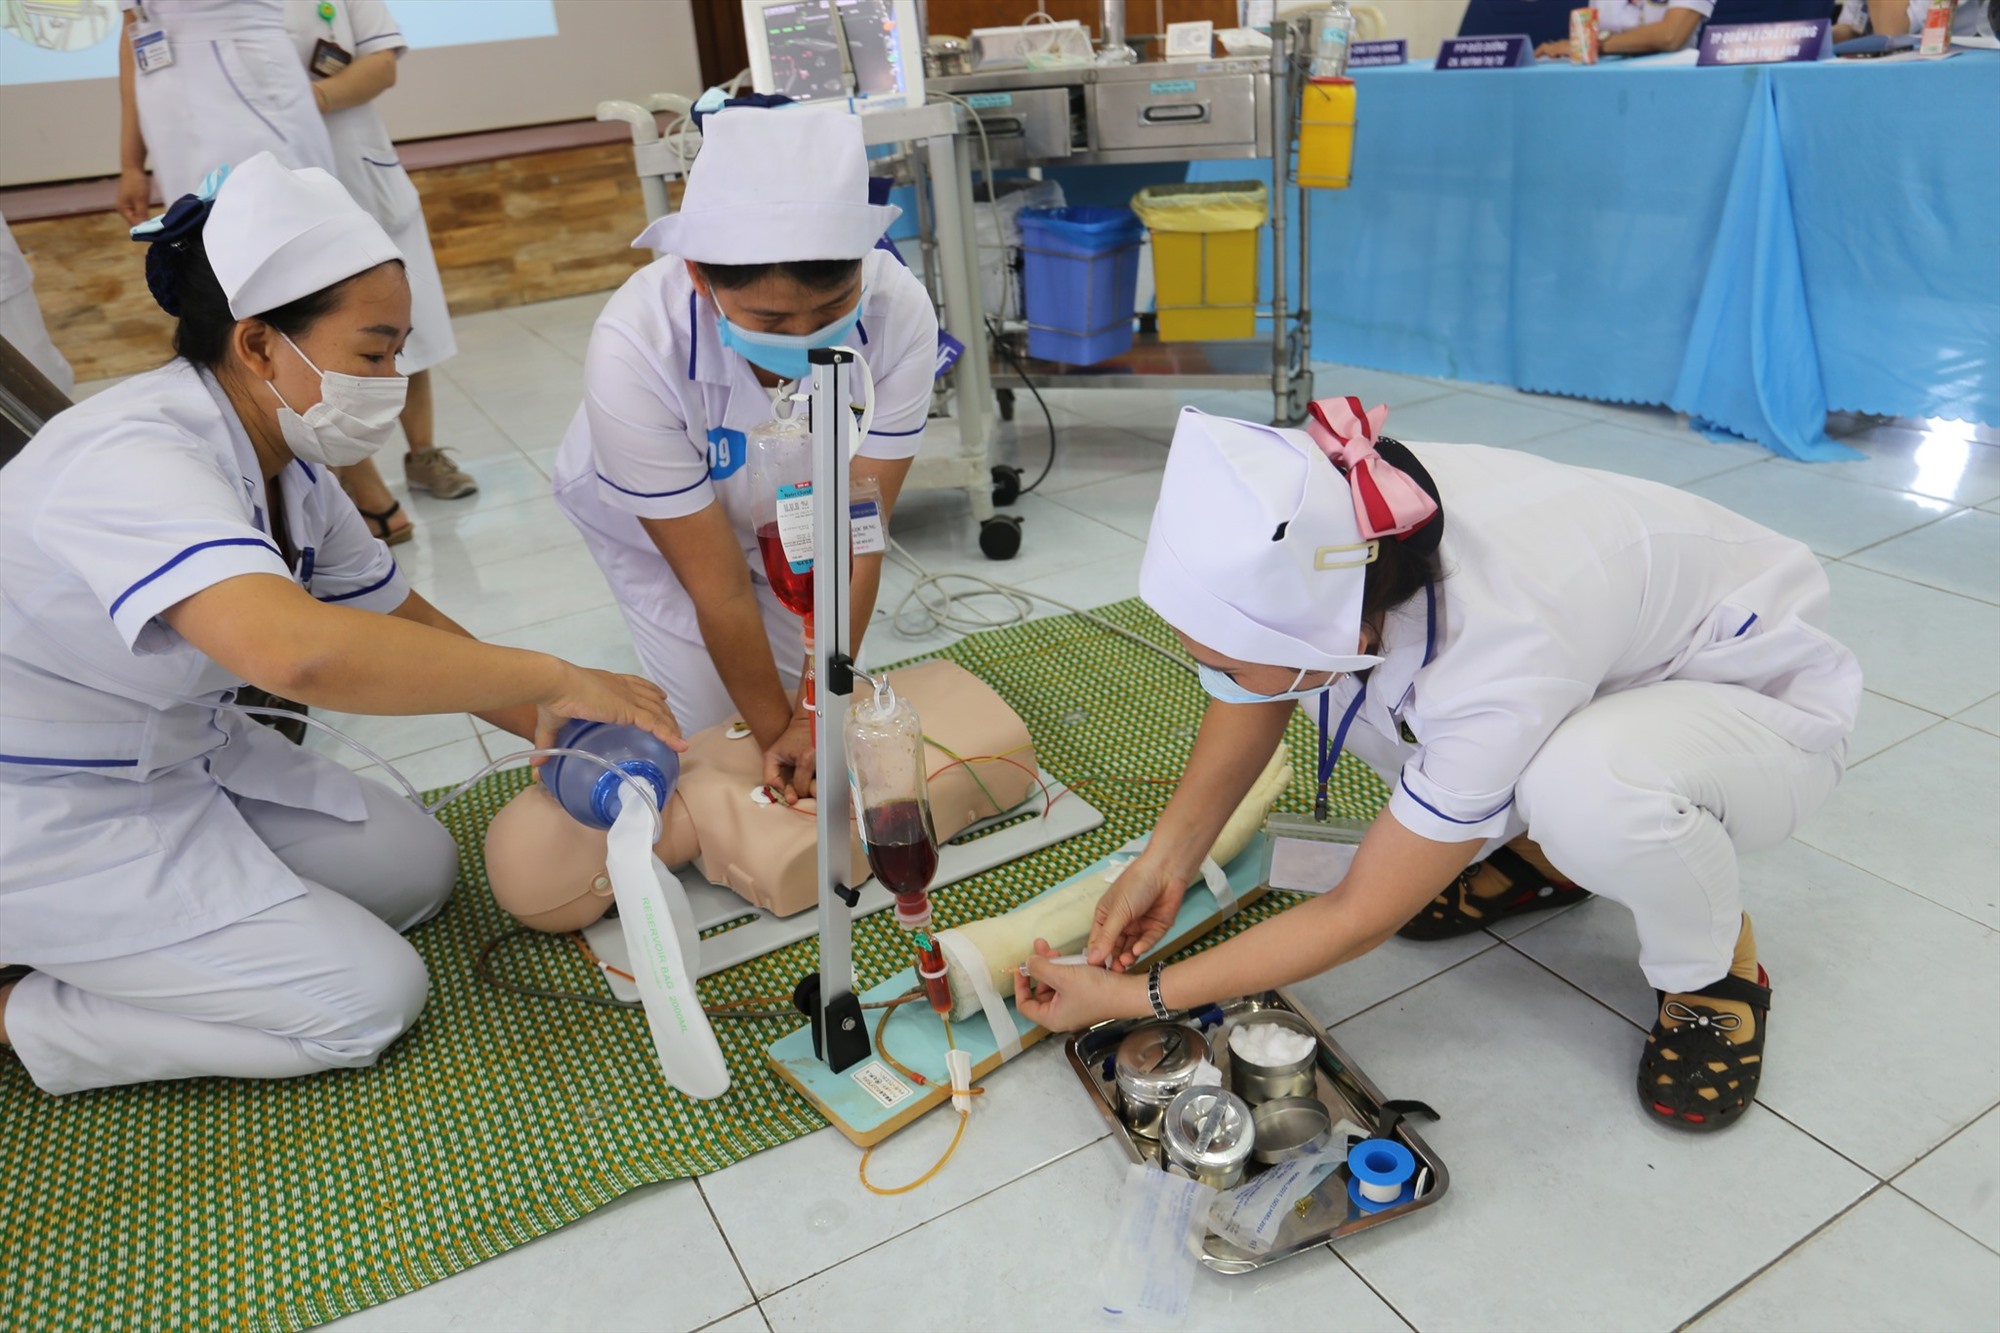 Năm 2022, Quảng Nam bổ sung hơn 400 viên chức y tế thông qua xét tuyển, để đội ngũ này có cơ hội được đi đào tạo, bổ nhiệm, nâng bậc lương, yên tâm công tác. Ảnh Hoàng Bin